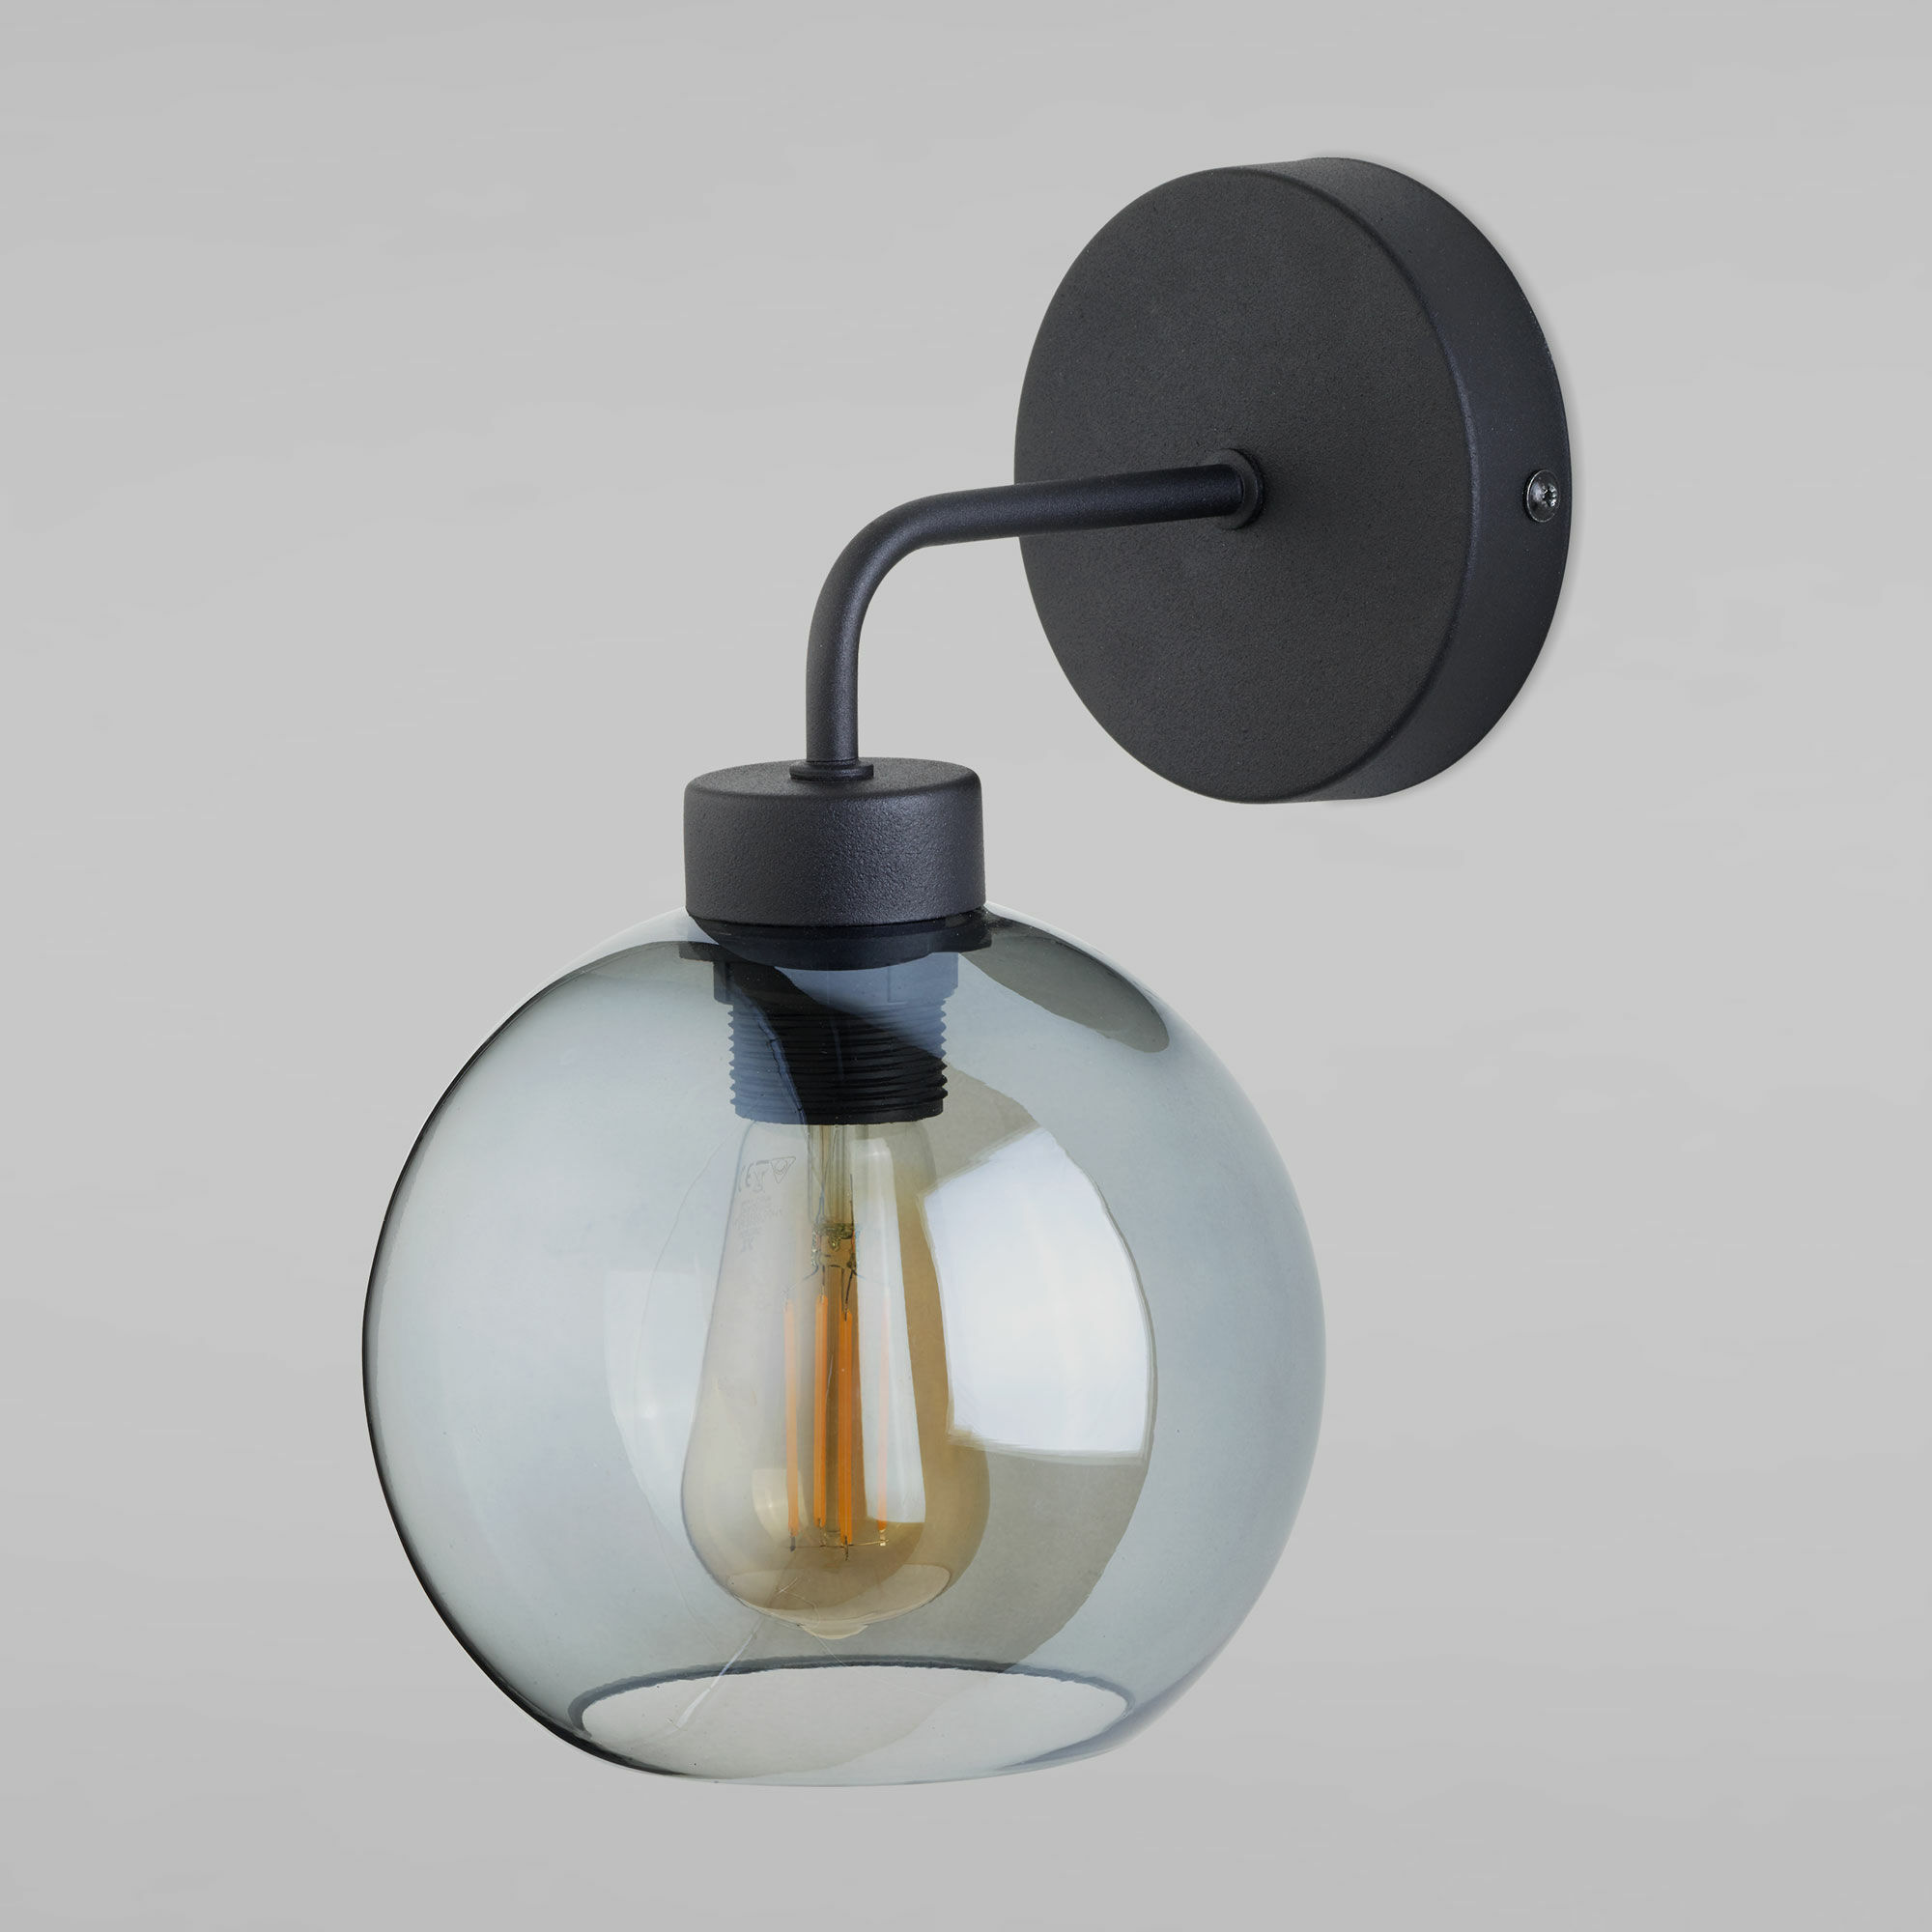 Настенный светильник со стеклянным плафоном TK Lighting Bari 4019 Bari. Фото 1